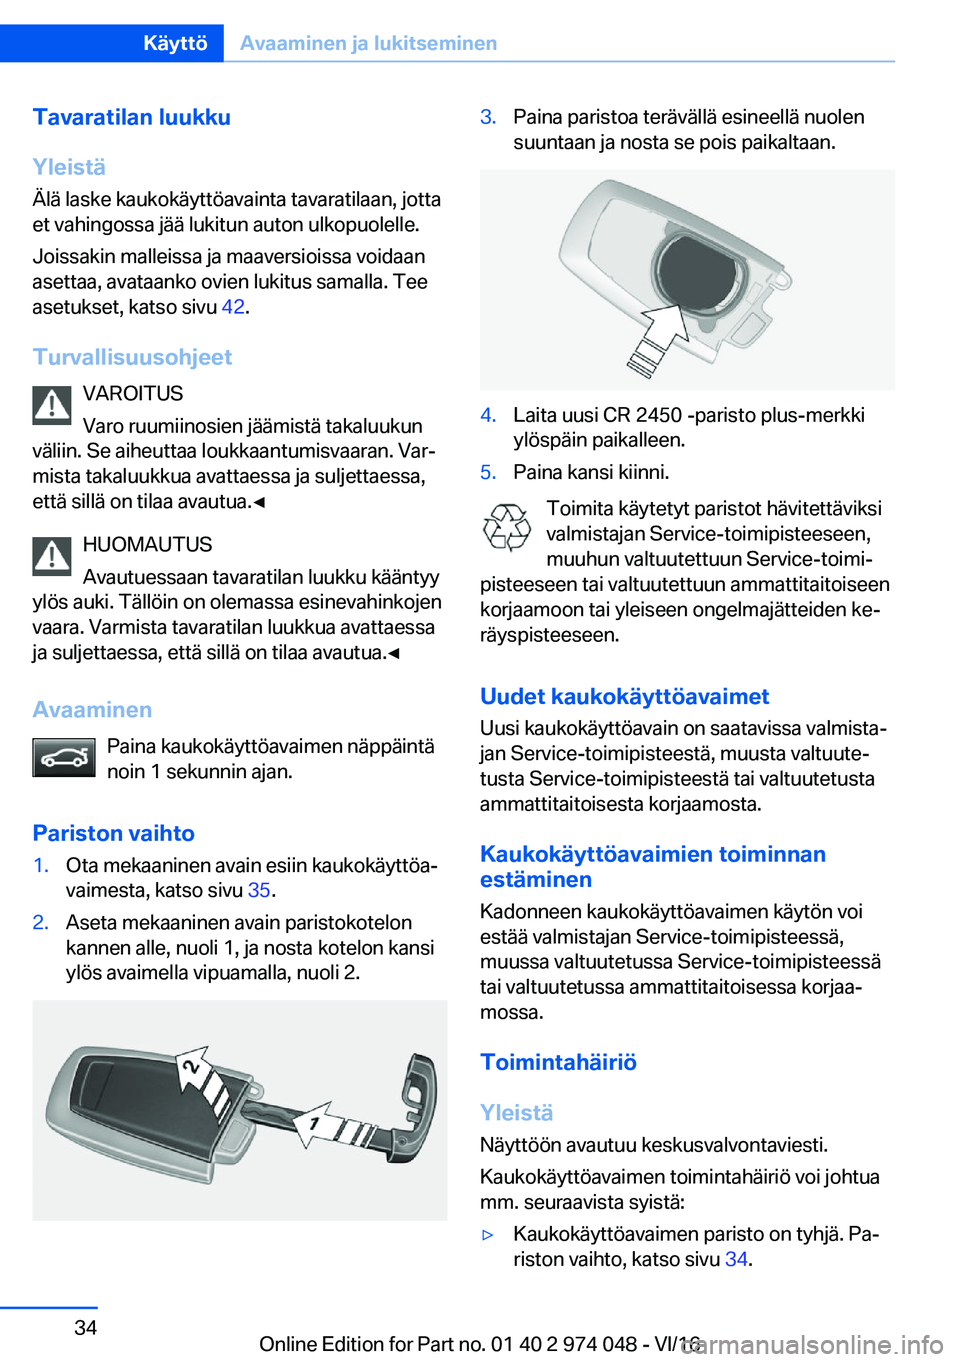 BMW M3 2017  Omistajan Käsikirja (in Finnish) �T�a�v�a�r�a�t�i�l�a�n��l�u�u�k�k�u
�Y�l�e�i�s�t�